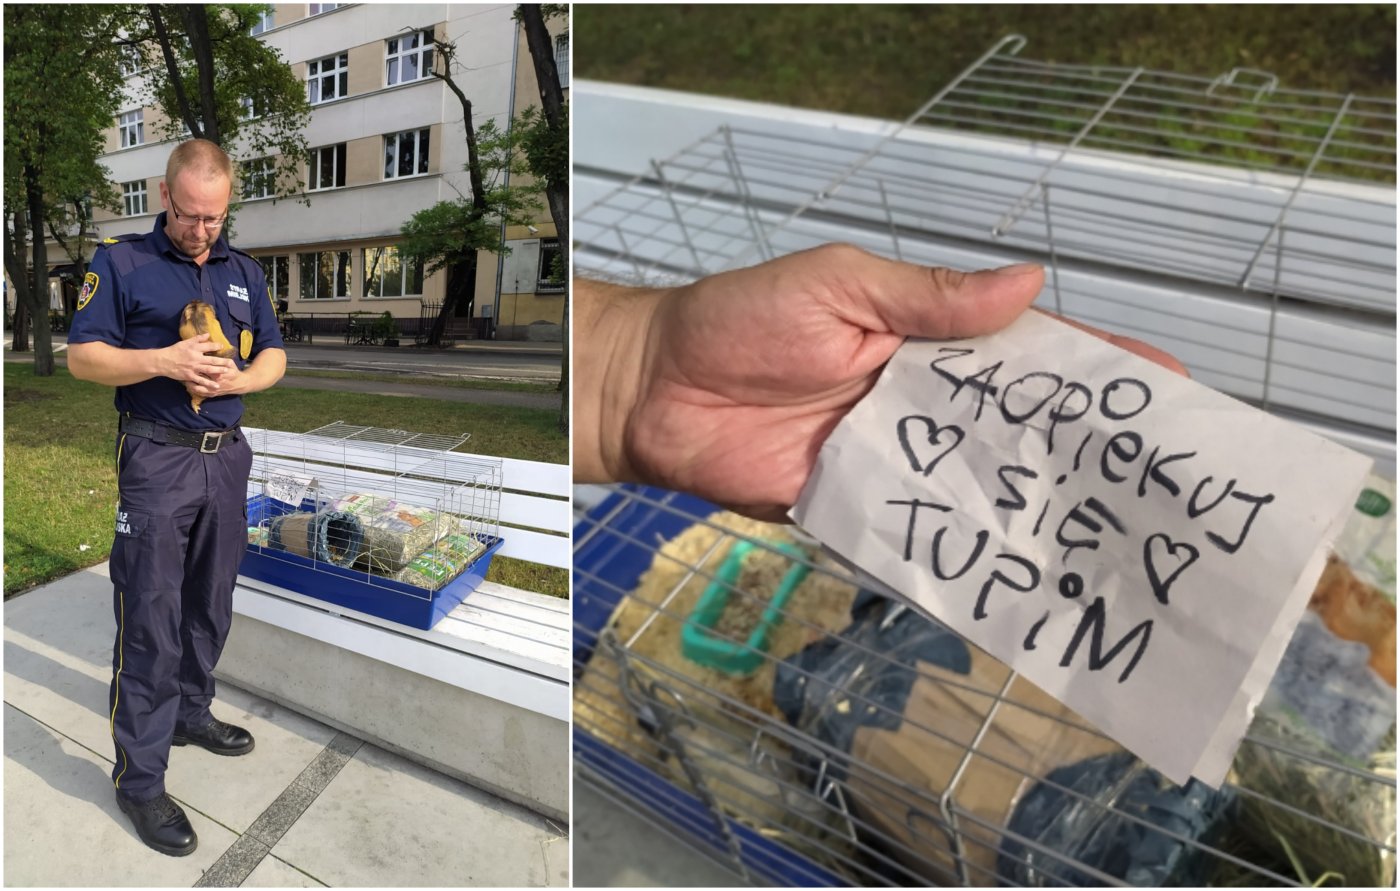 Świnkę porzucono w samym centrum miasta, na klatce była przyczepiona kartka z napisem „Zaopiekuj się Tupim”, fot. Straż Miejska w Gdyni / Ekopatrol